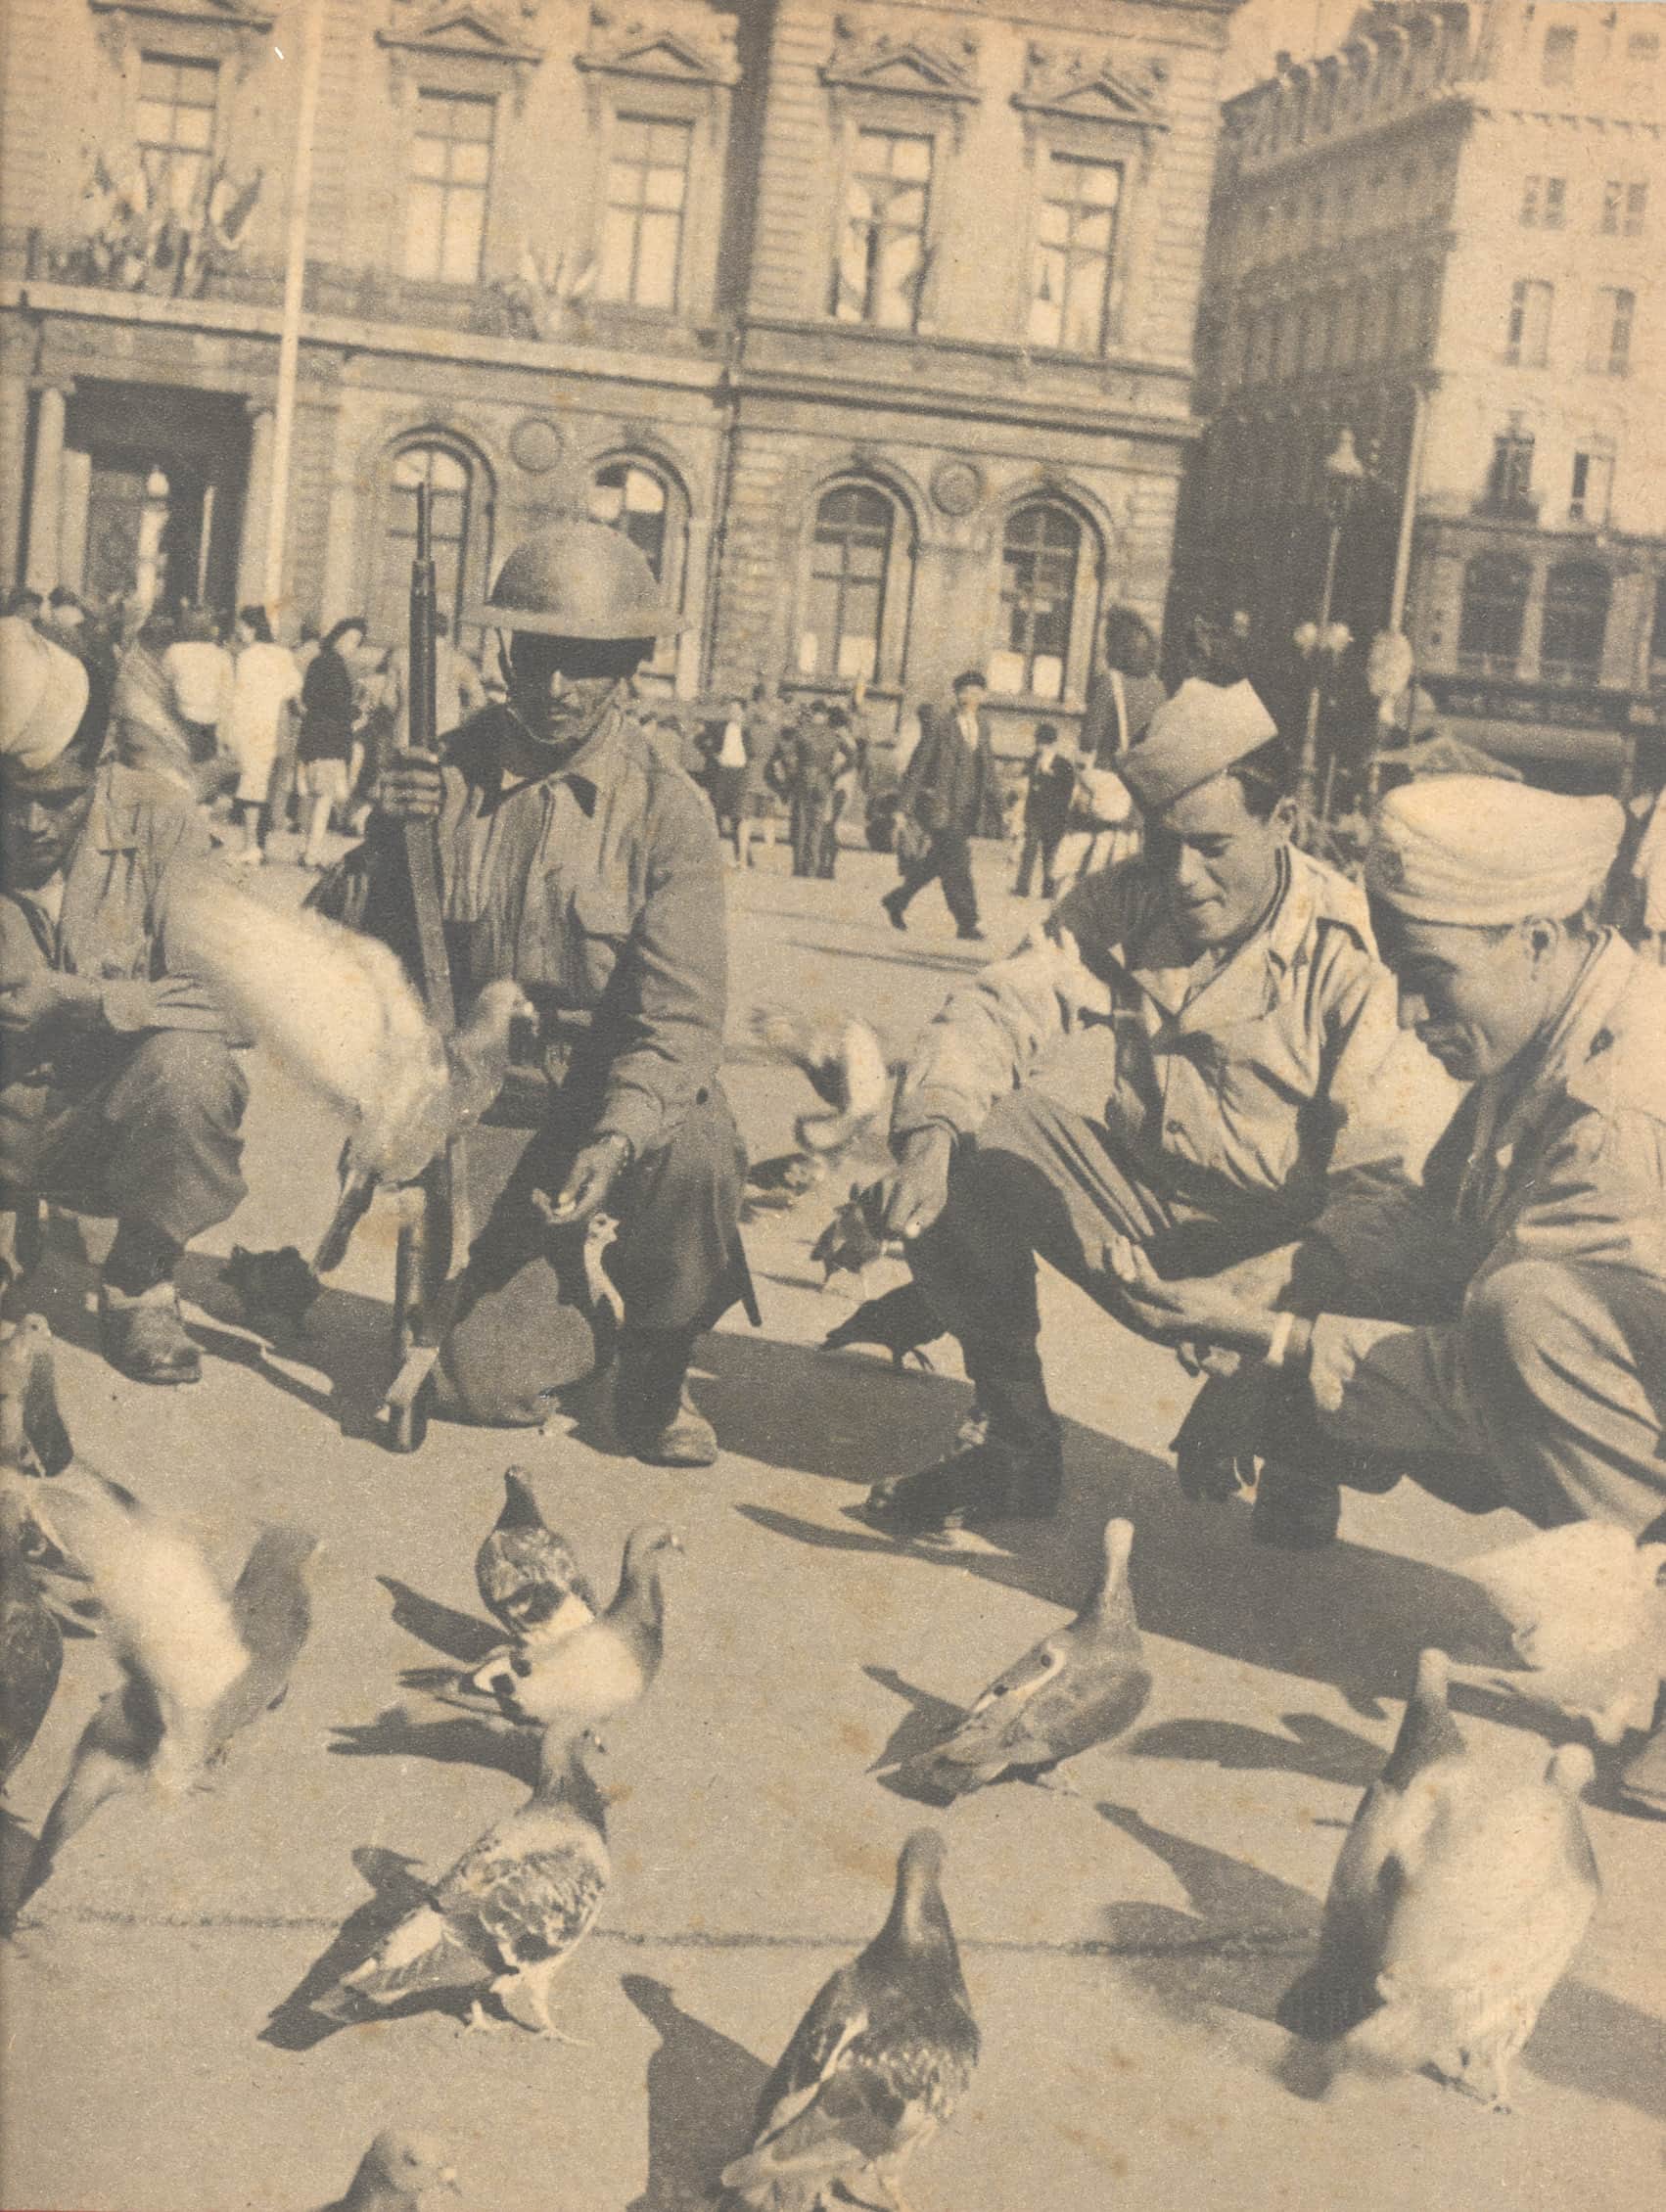 Des tirailleurs algériens place des Terreaux après la Libération de Lyon le 3 septembre 1944. ©Musée de la Résistance et de la déportation de Grenoble